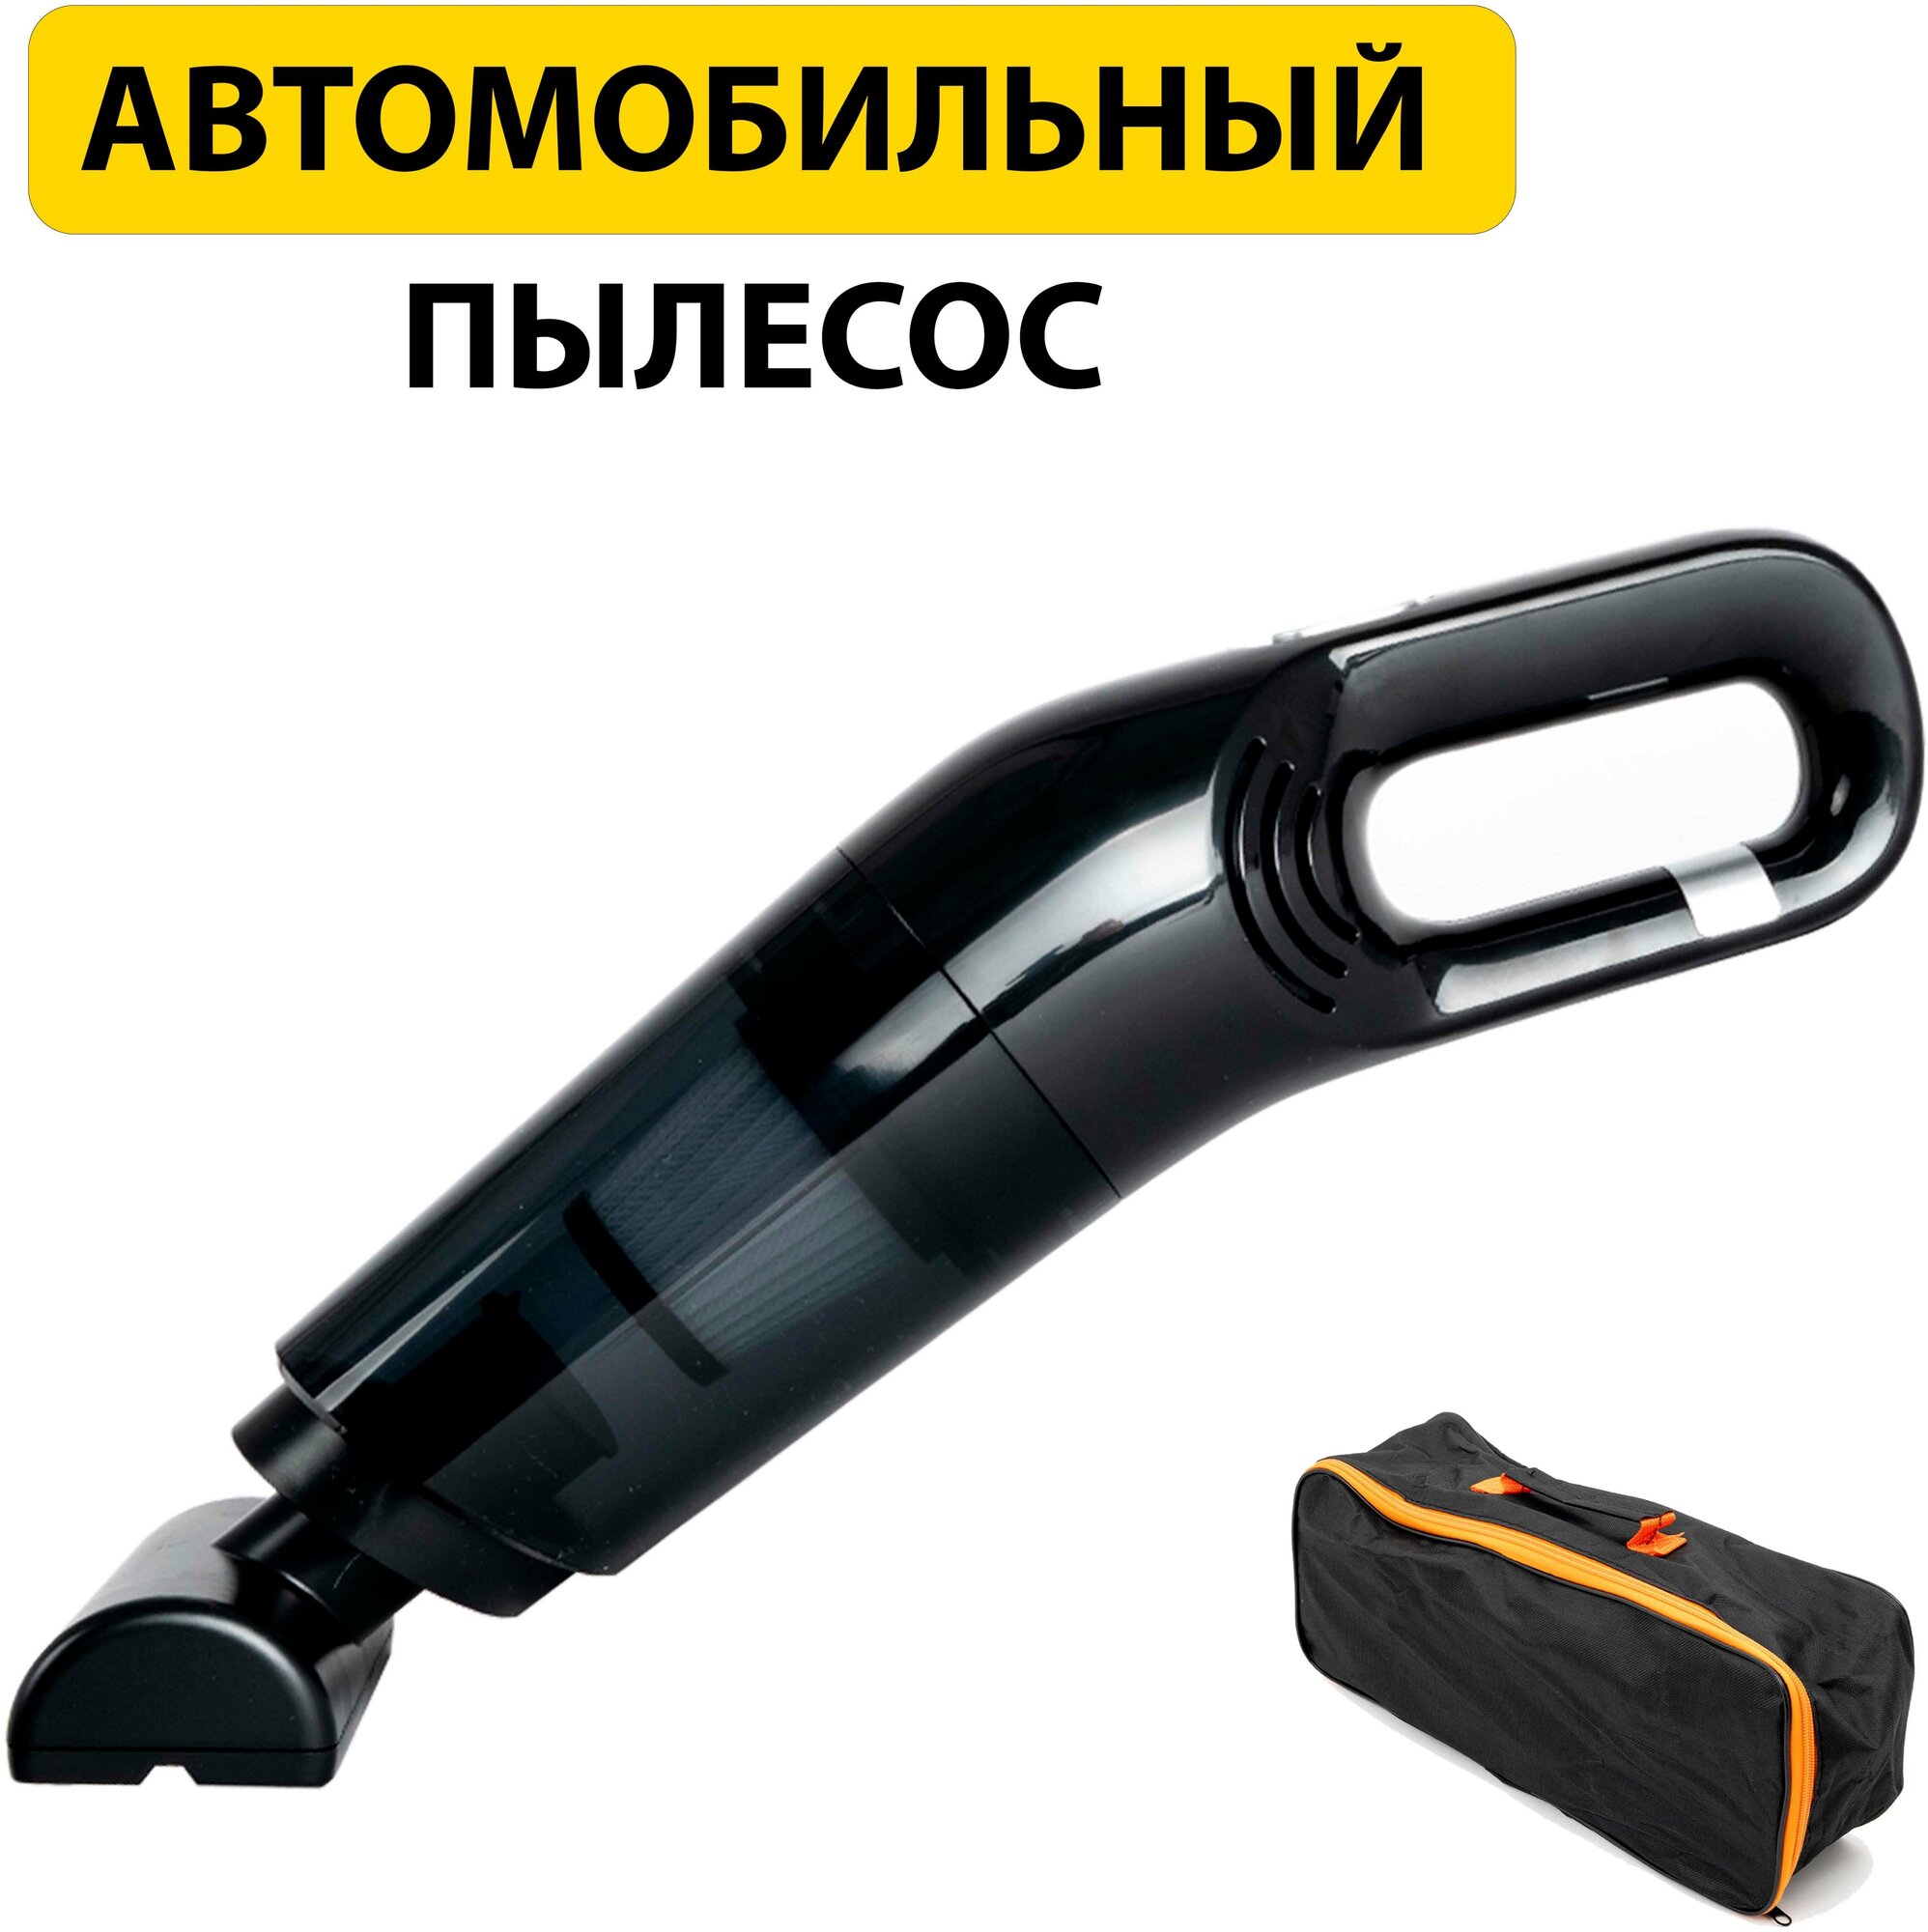 Автомобильный пылесос беспроводной, с сумкой, мощный, аккумуляторный, ручной — купить в интернет-магазине по низкой цене на Яндекс Маркете